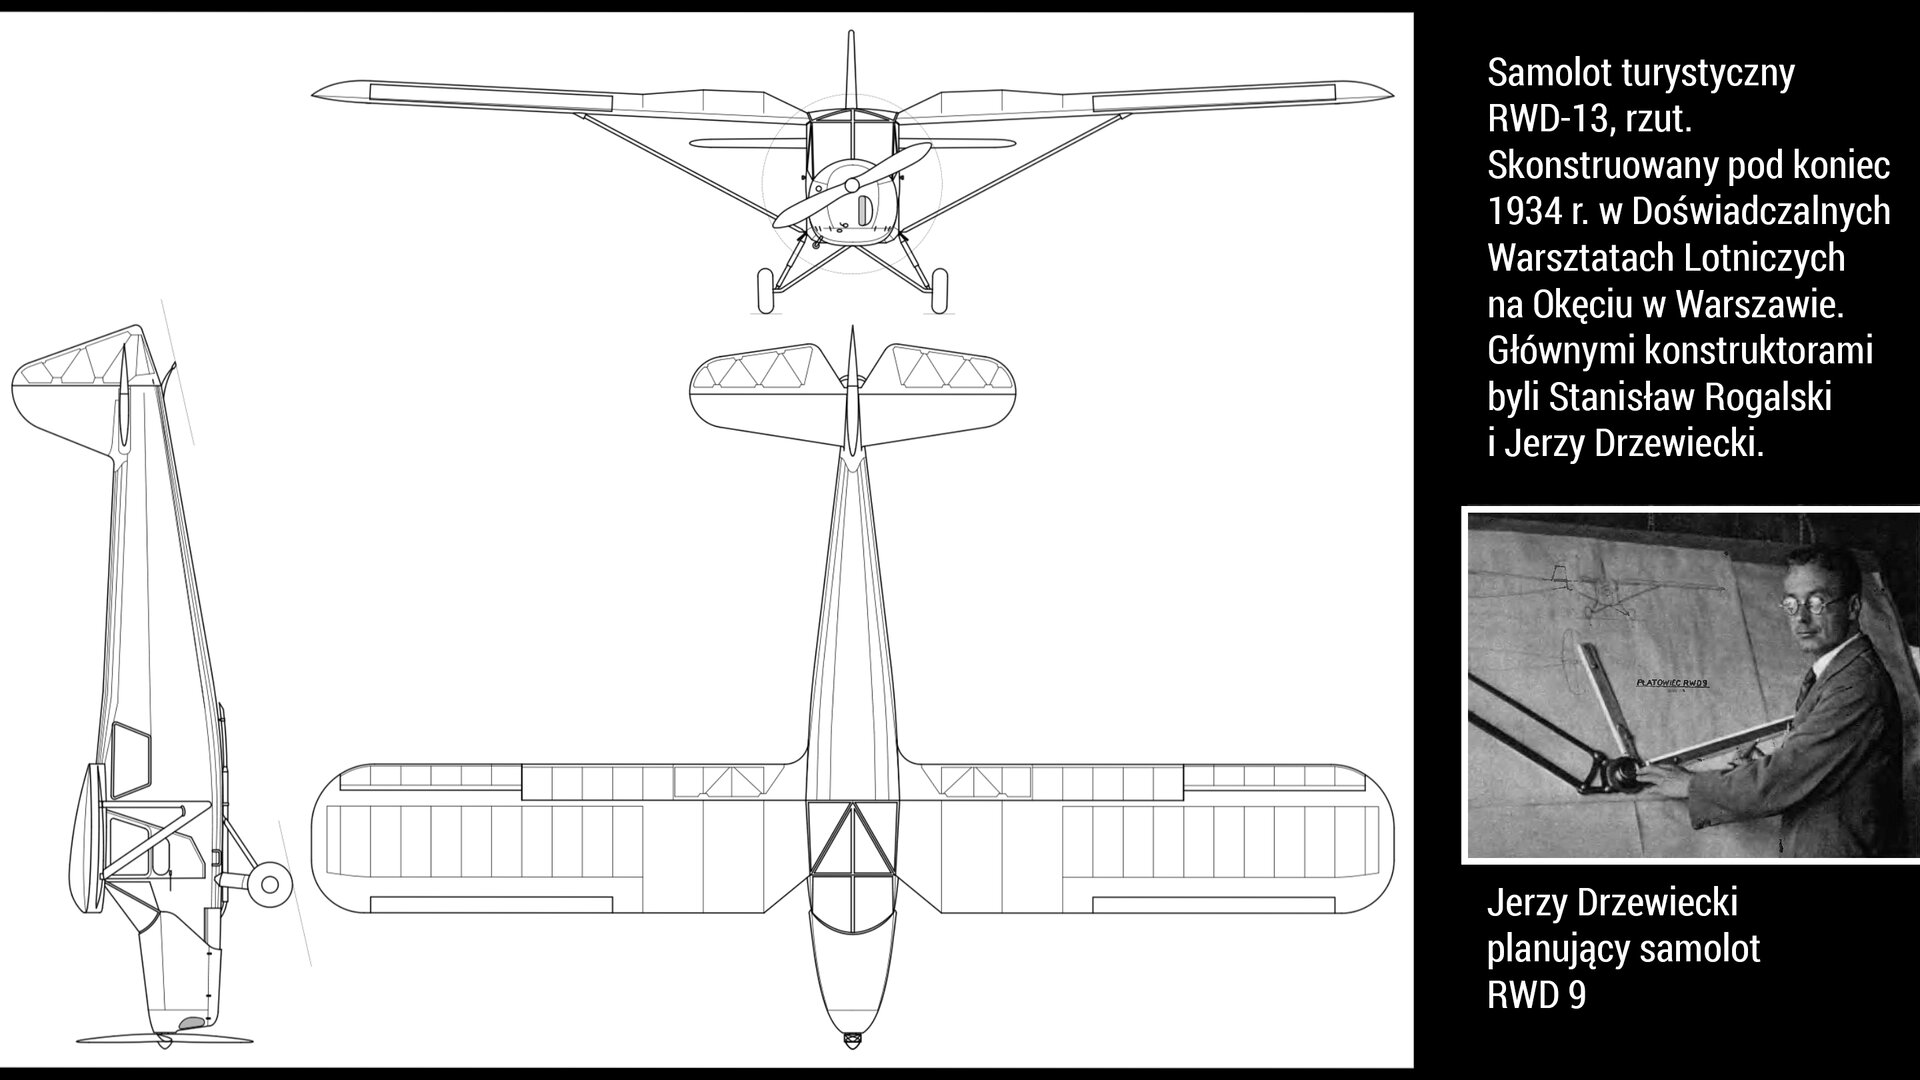 Ilustracja przedstawia schemat graficzny samolotu turystycznego RWD-13, rzut. Skonstruowany pod koniec 1934 r. w Doświadczalnych Warsztatach Lotniczych na Okęciu w Warszawie. Głównymi konstruktorami byli Stanisław Rogalski i Jerzy Drzewiecki. Poniżej w prawym dolnym rogu znajduje się fotografia Jerzego Drzewieckiego planującego samolot RWD-9.